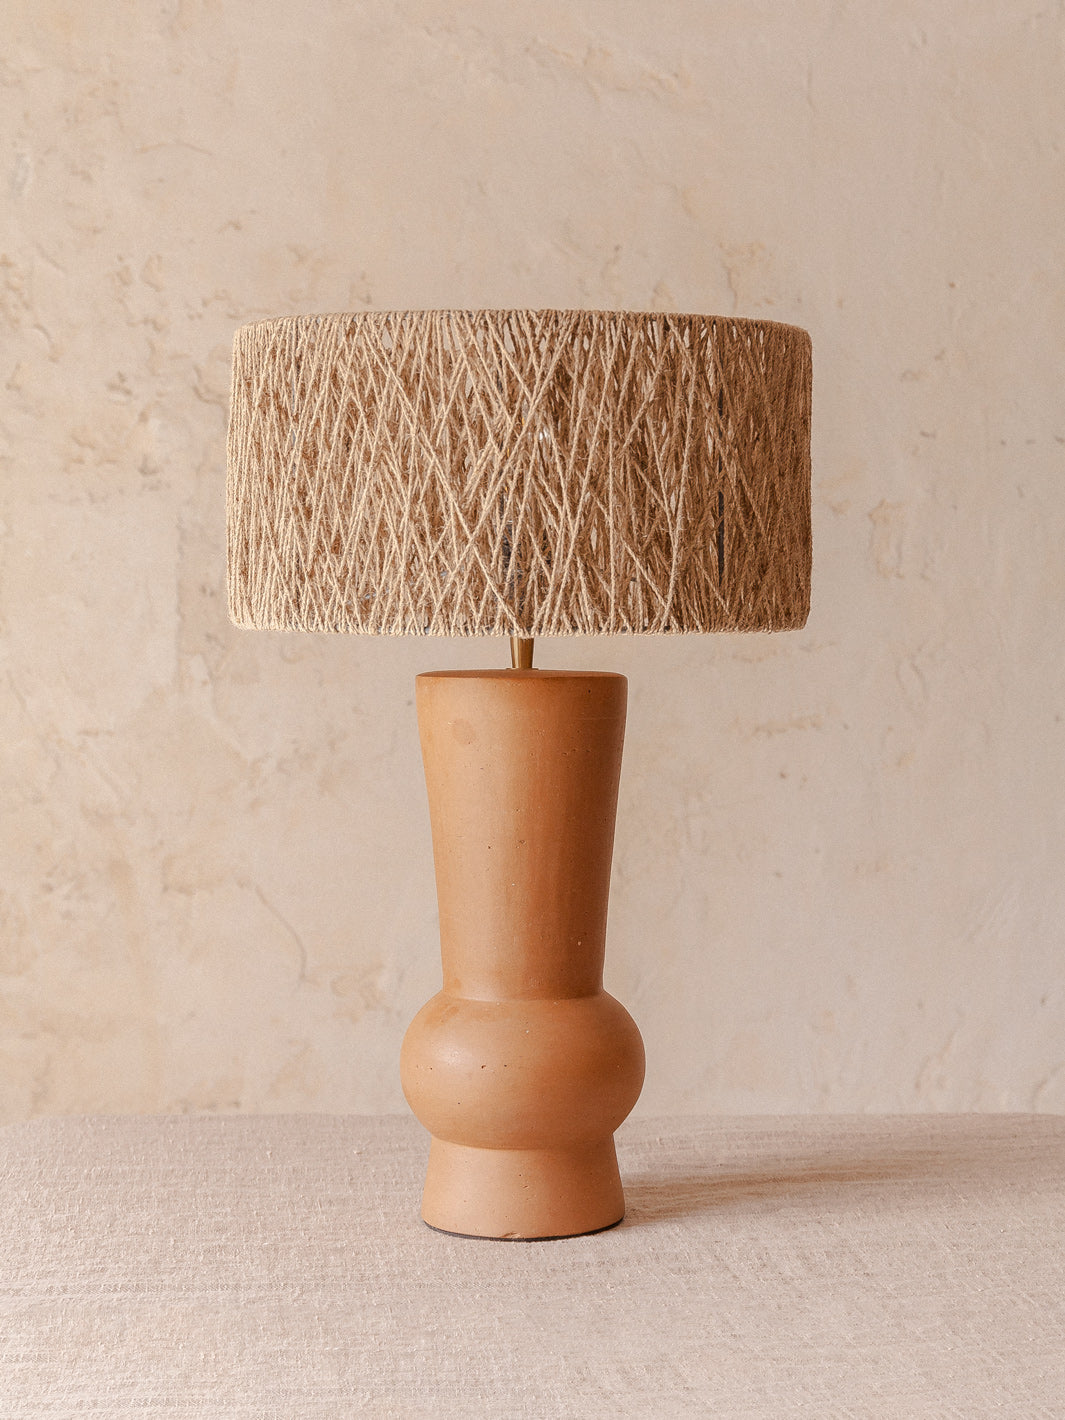 Terracotta lamp jute shade